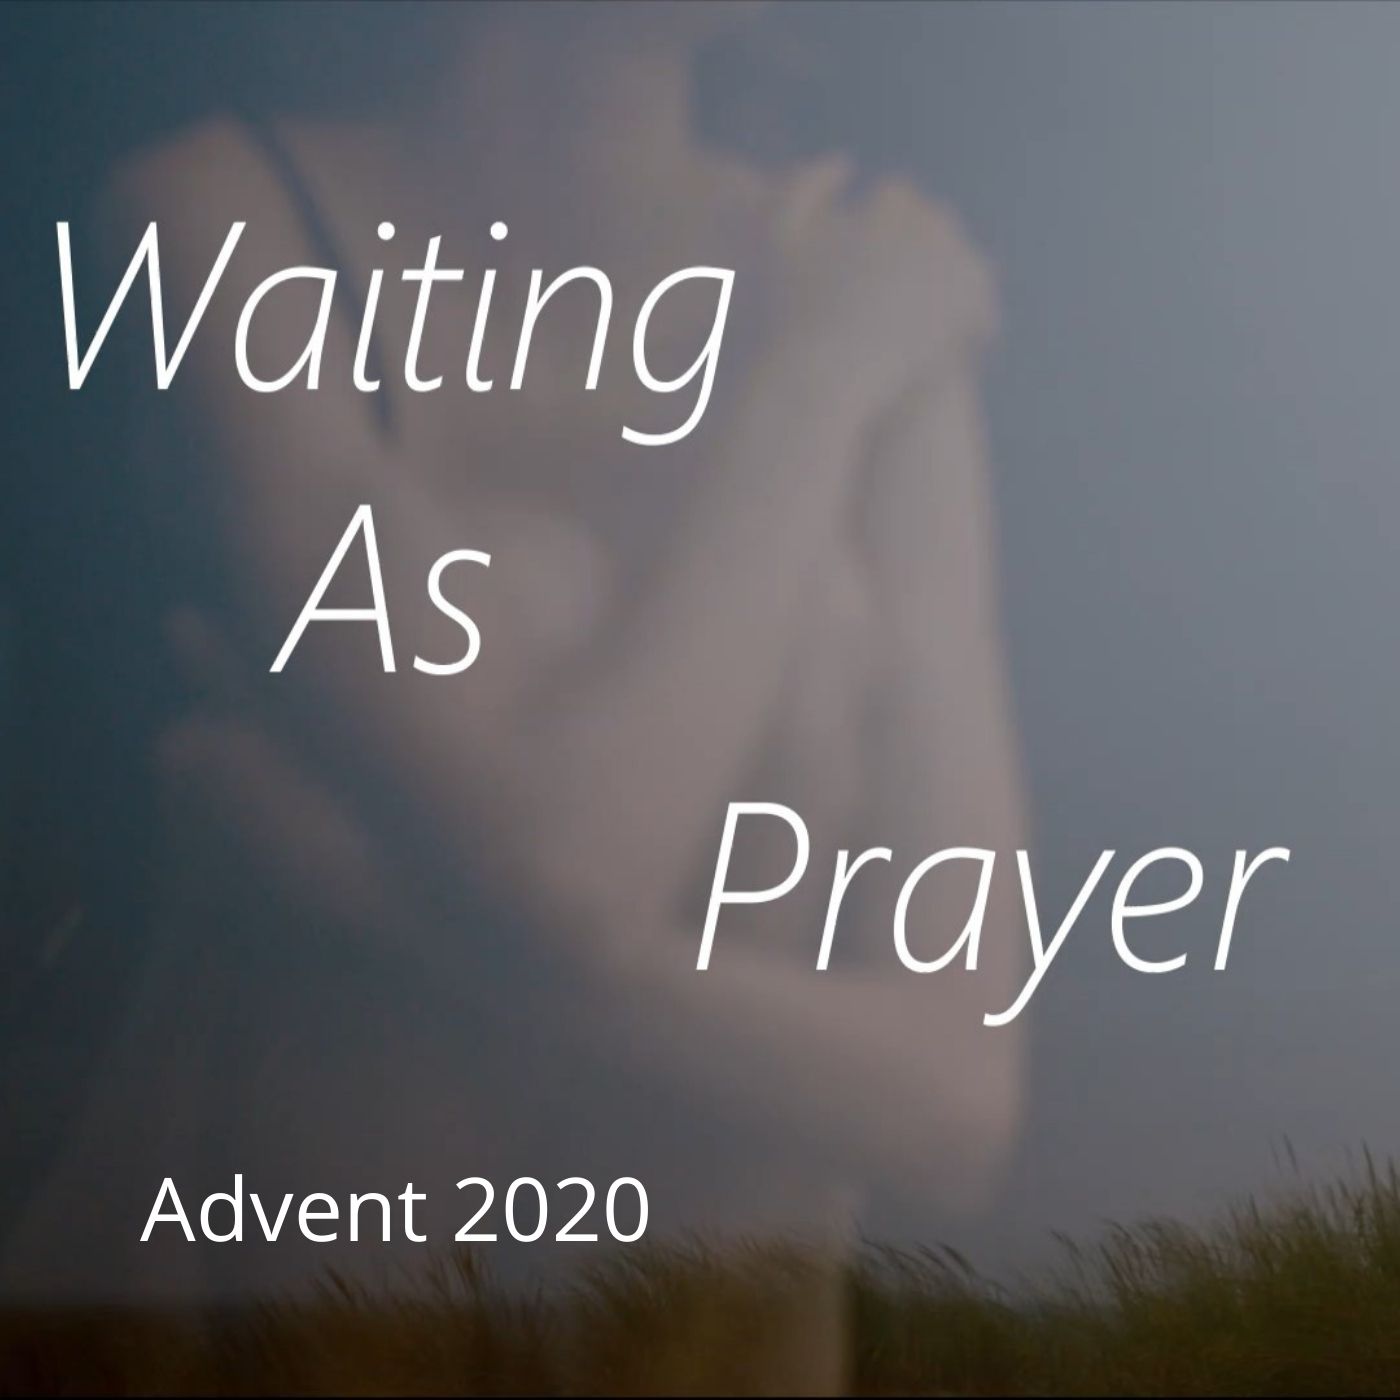 Waiting as prayer CD cover.jpg